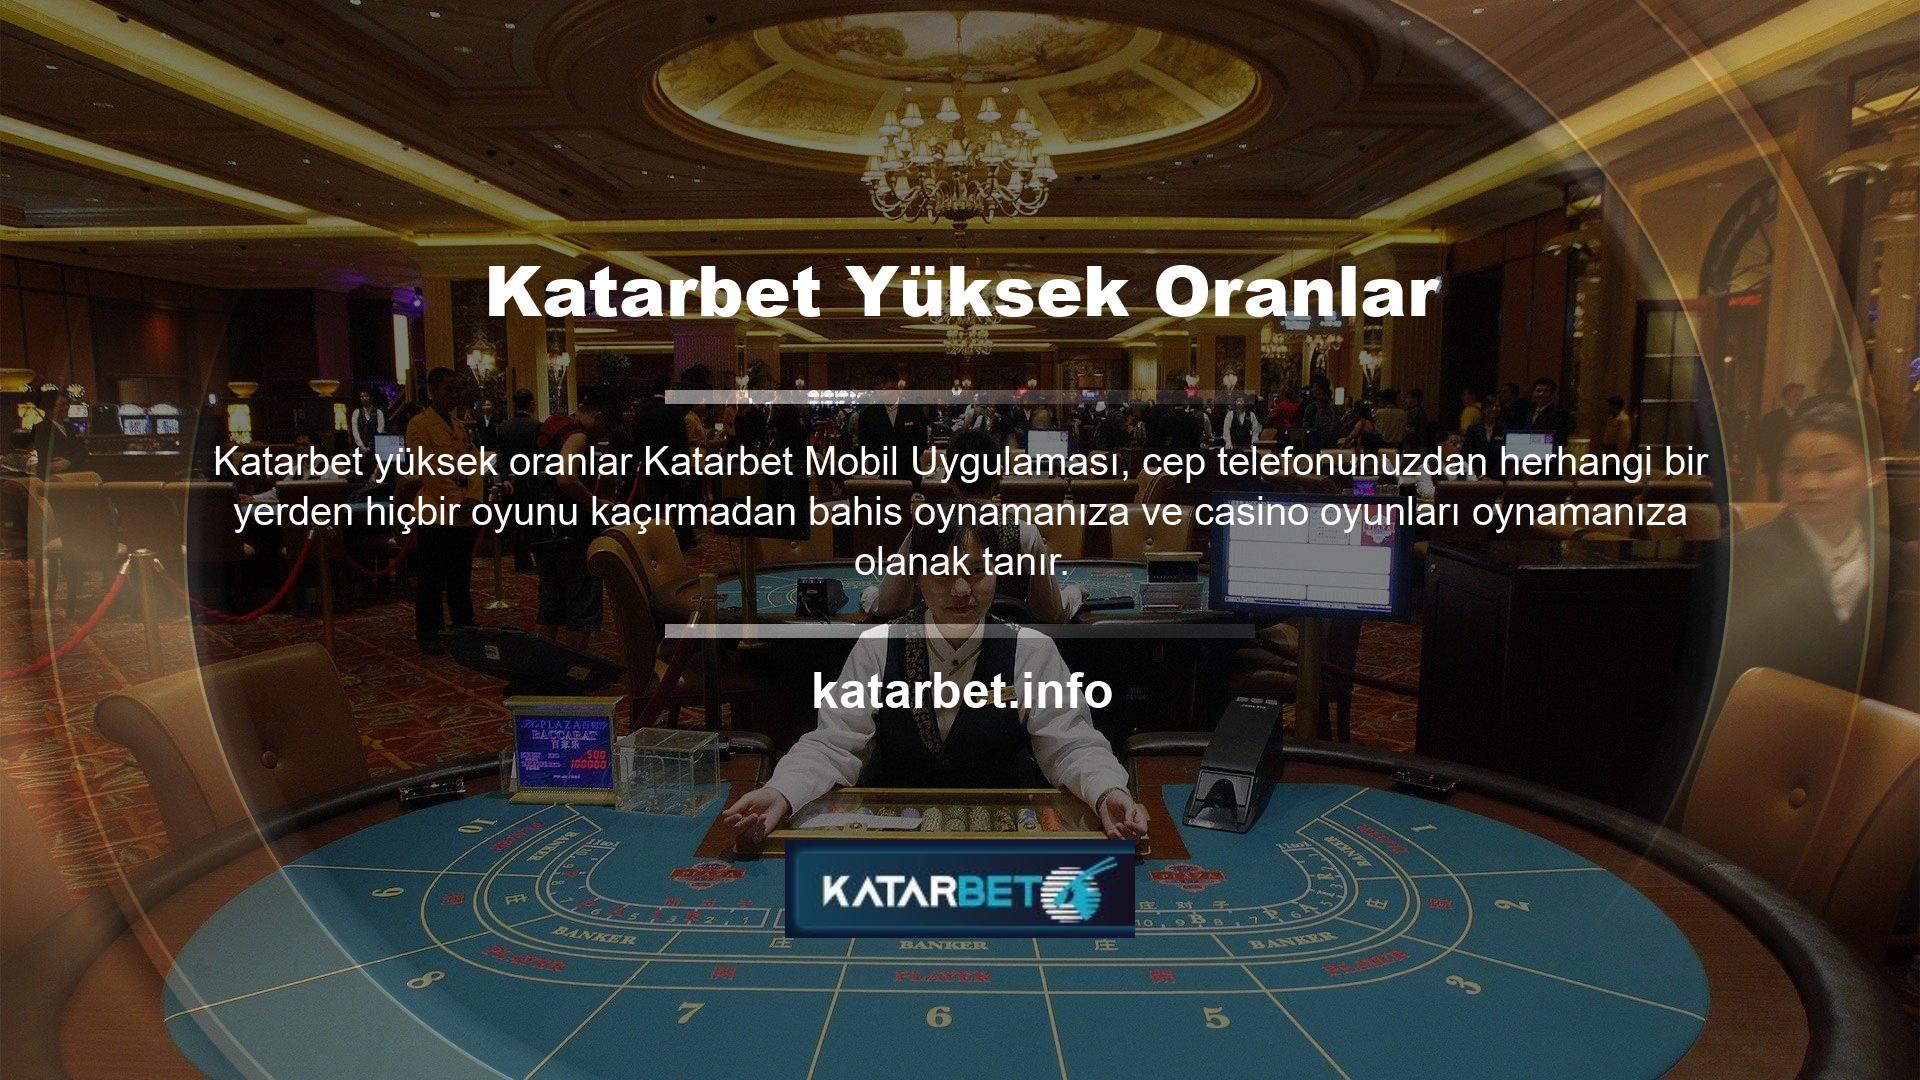 Site oyuncuların ilgisini çekmek istememektedir bu nedenle spor bahisleri ve casino oyunlarında Türk oyunculara özel bonus etkinlikleri düzenlenmektedir